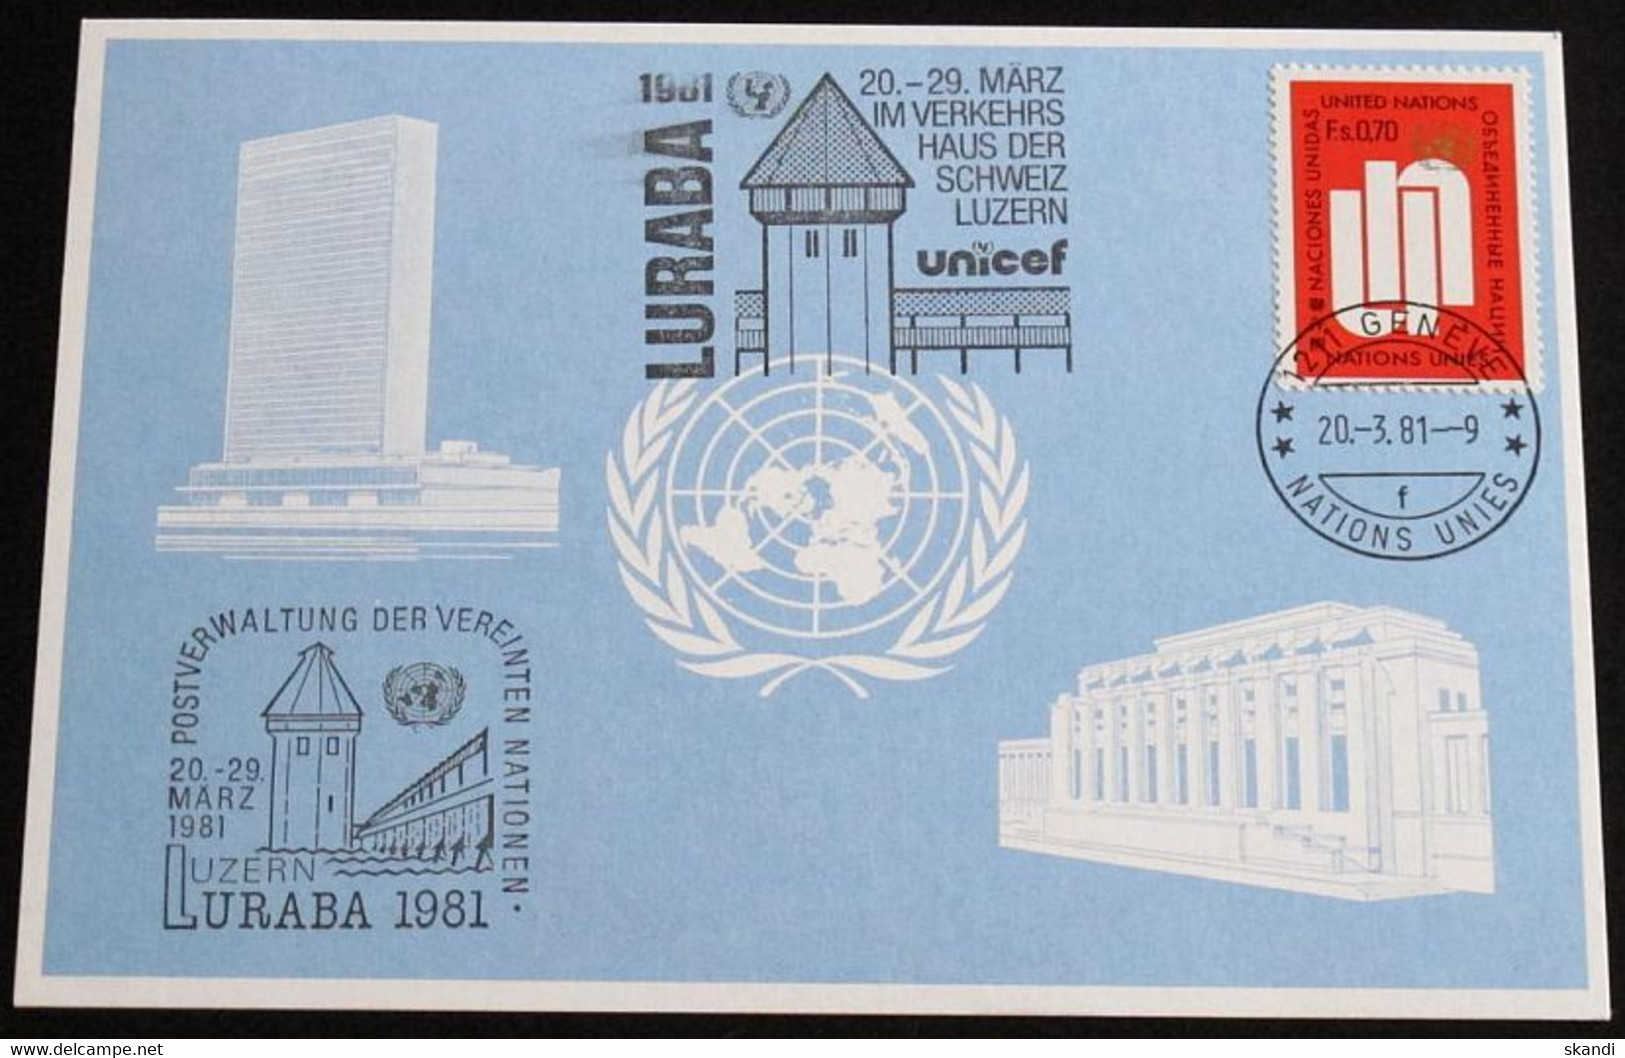 UNO GENF 1981 Mi-Nr. 99 Blaue Karte - Blue Card Mit Erinnerungsstempel UND SONDERSTEMPEL LURABA 1981 LUZERN - Covers & Documents